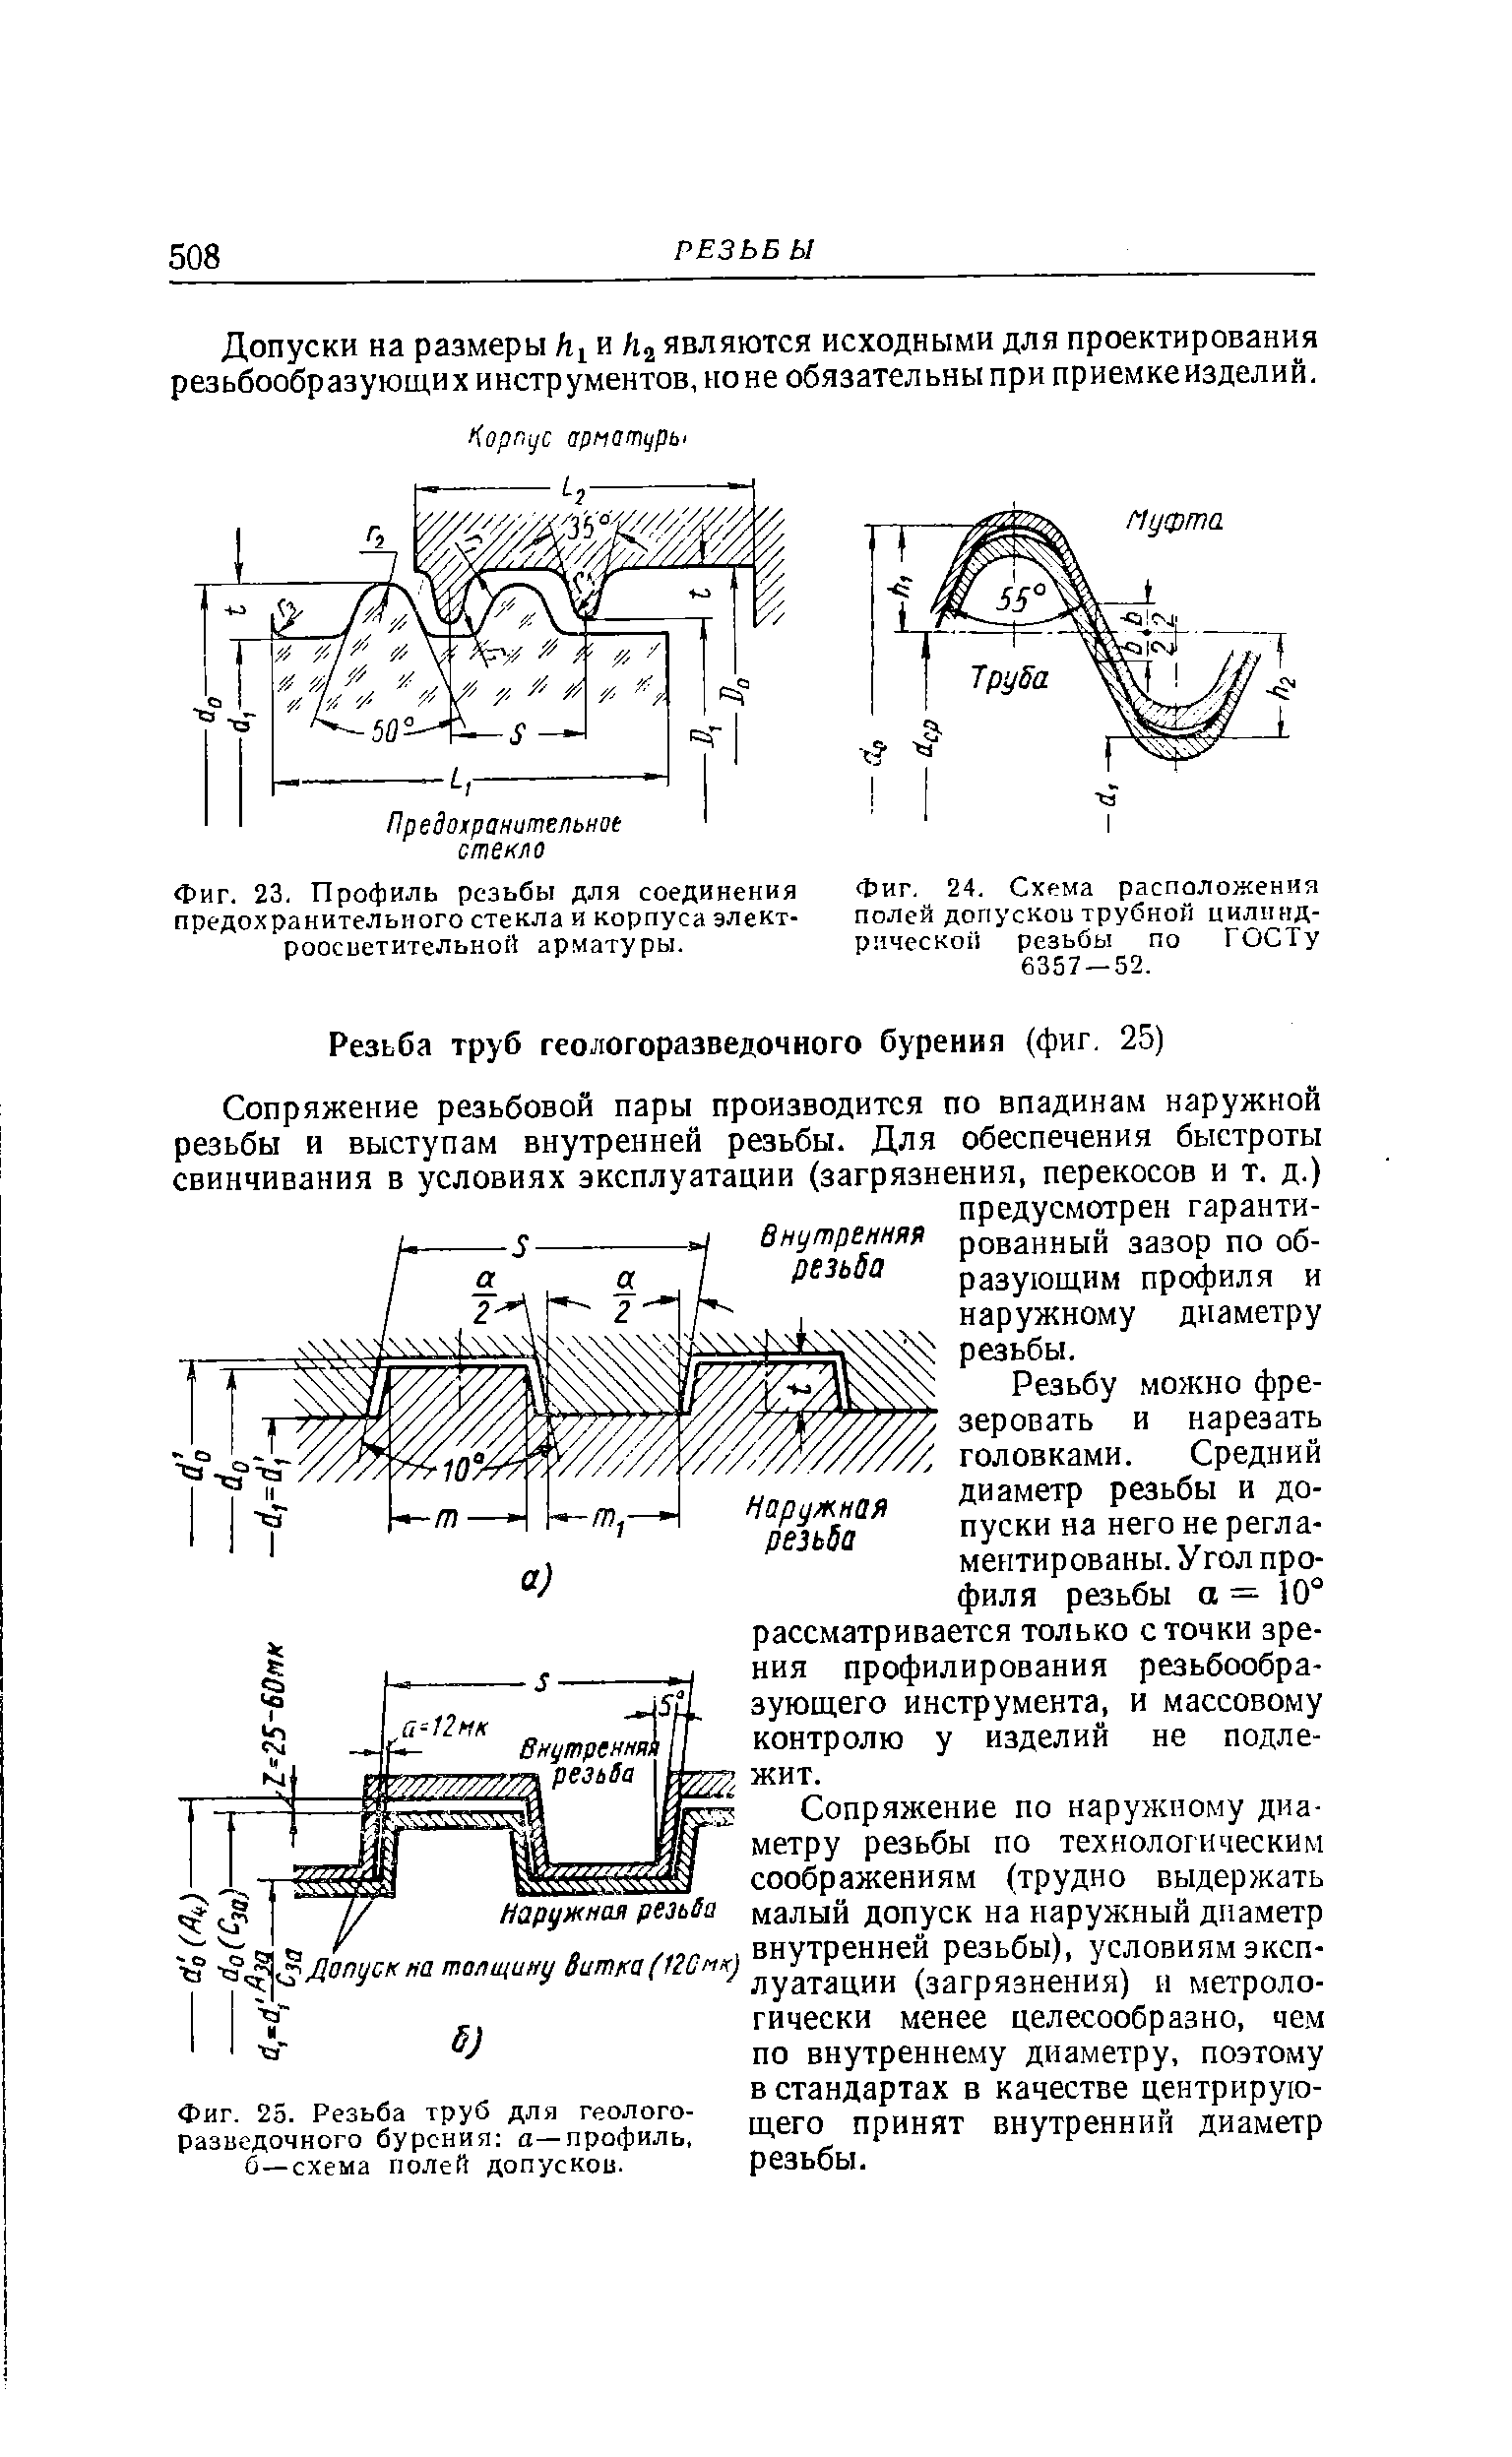 Фиг. 24, Схема расположения полей допусков трубной цилиндрической резьбы по ГОСТу 6357 — 52.
